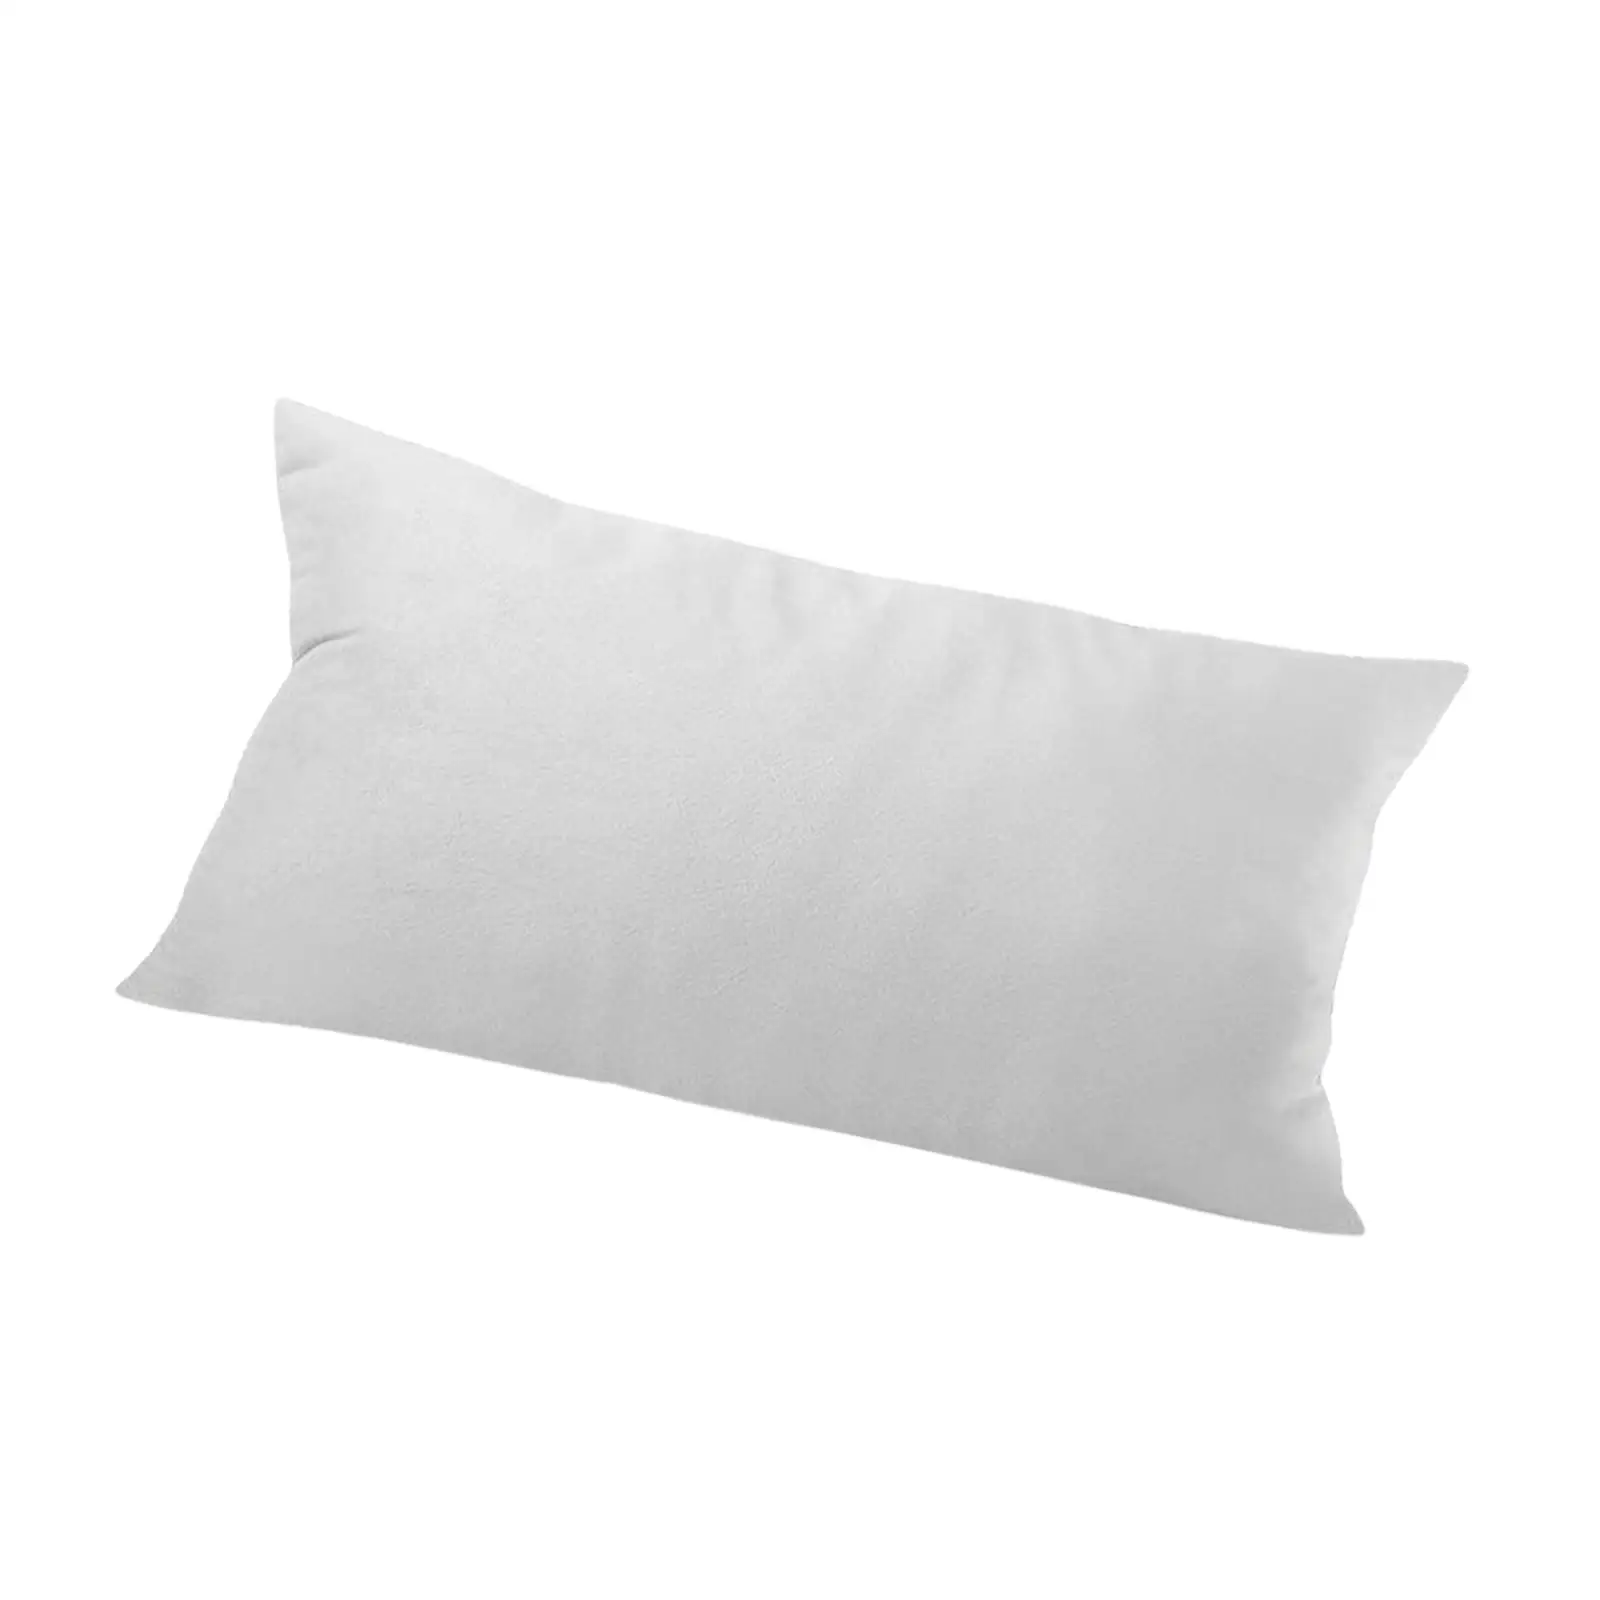 Soft Head Cushion Pillow with pillow Lumbar Pillows for Folding Lounger Garden Terrace recliner Sling Chair Beach Headrest